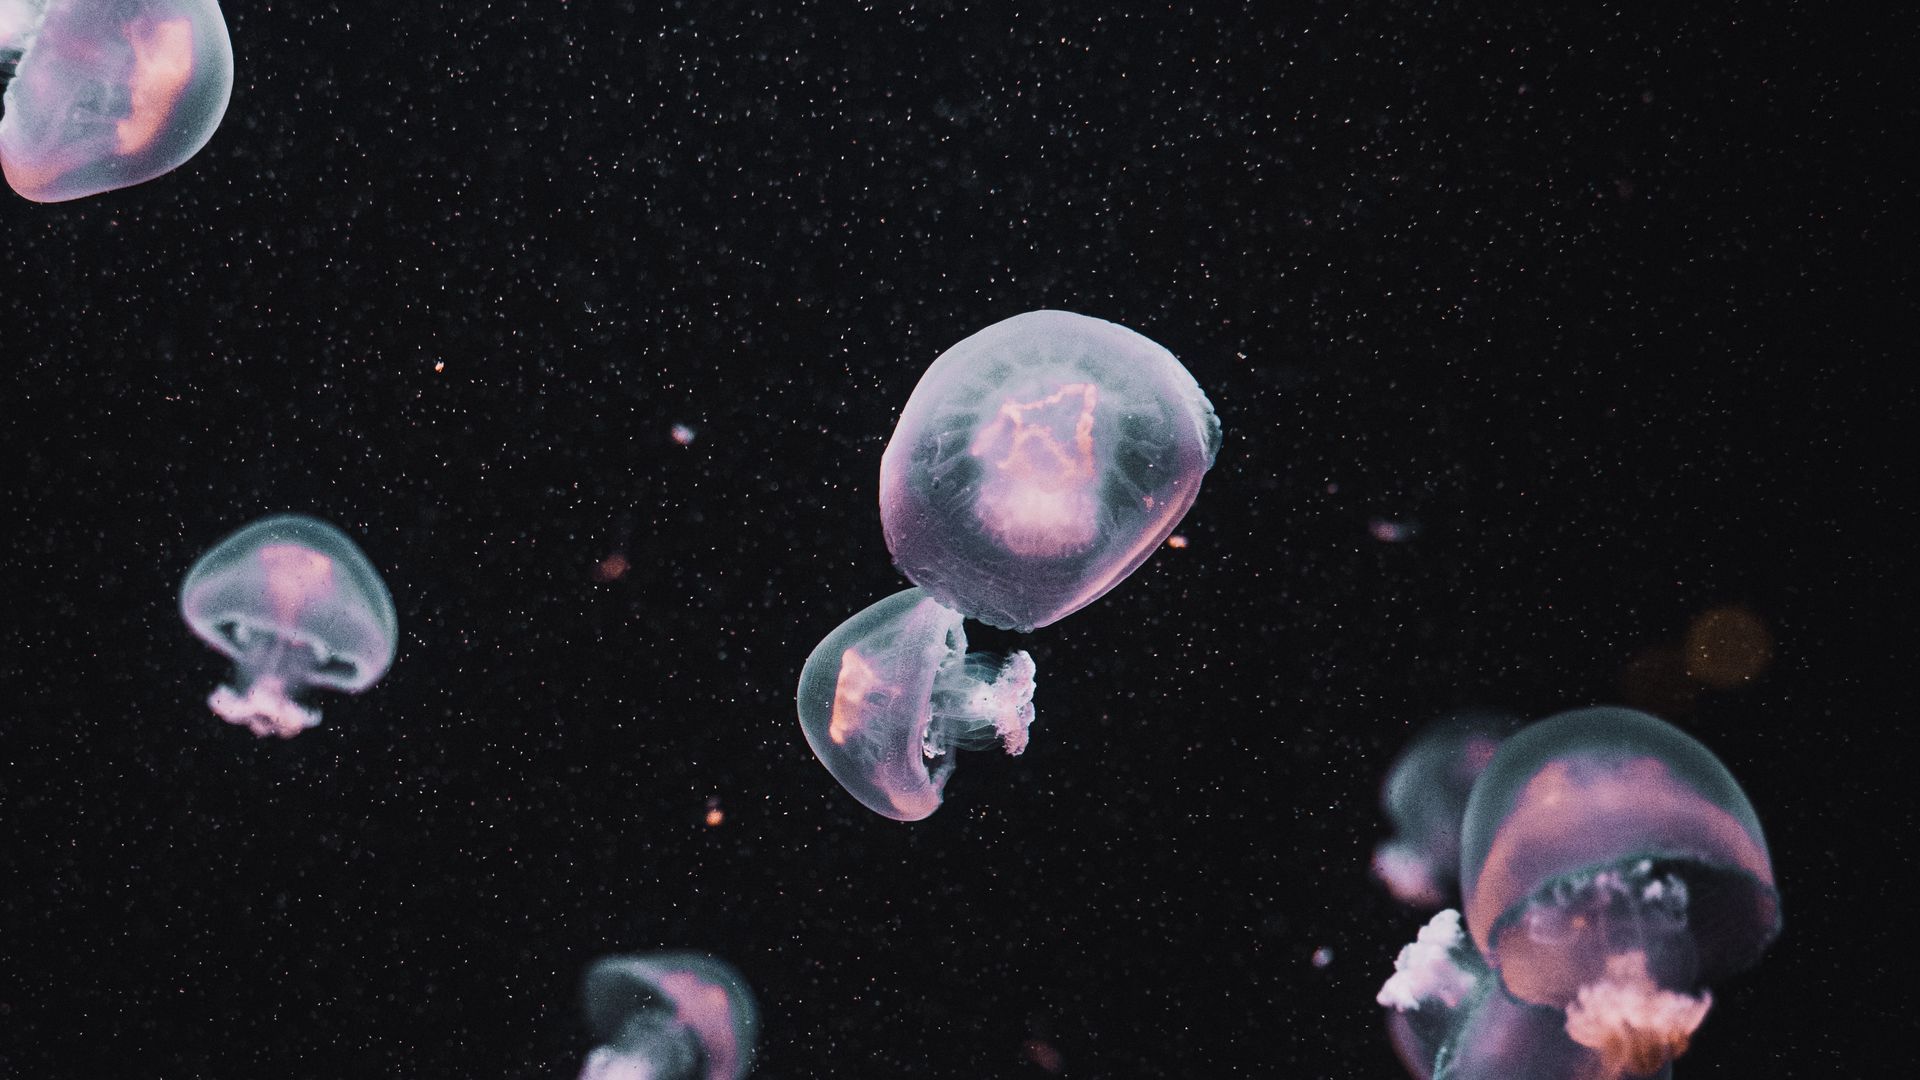 Download wallpaper 1920x1080 jellyfish, underwater world, dark